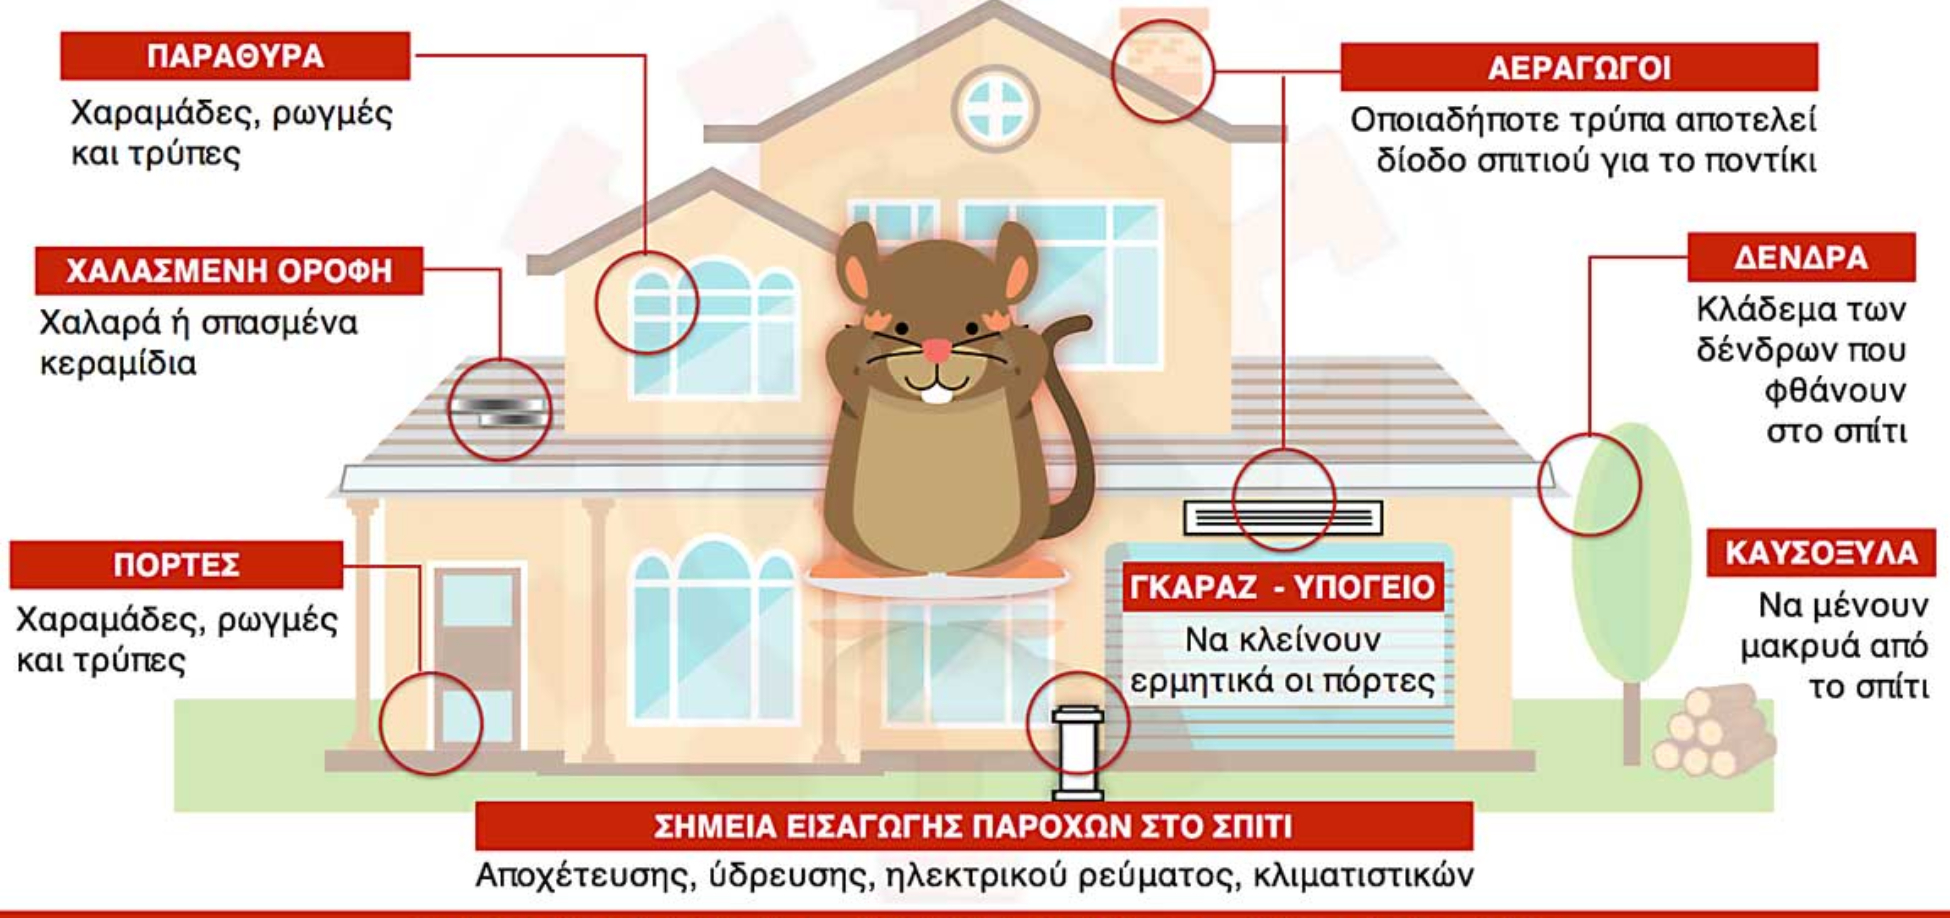 Περιττώματα ποντικού σε ντουλάπια χαλιά και ρούχα: Ο σωστός τρόπος καθαρισμού και πως να διώξετε τα ποντίκια από το σπίτι